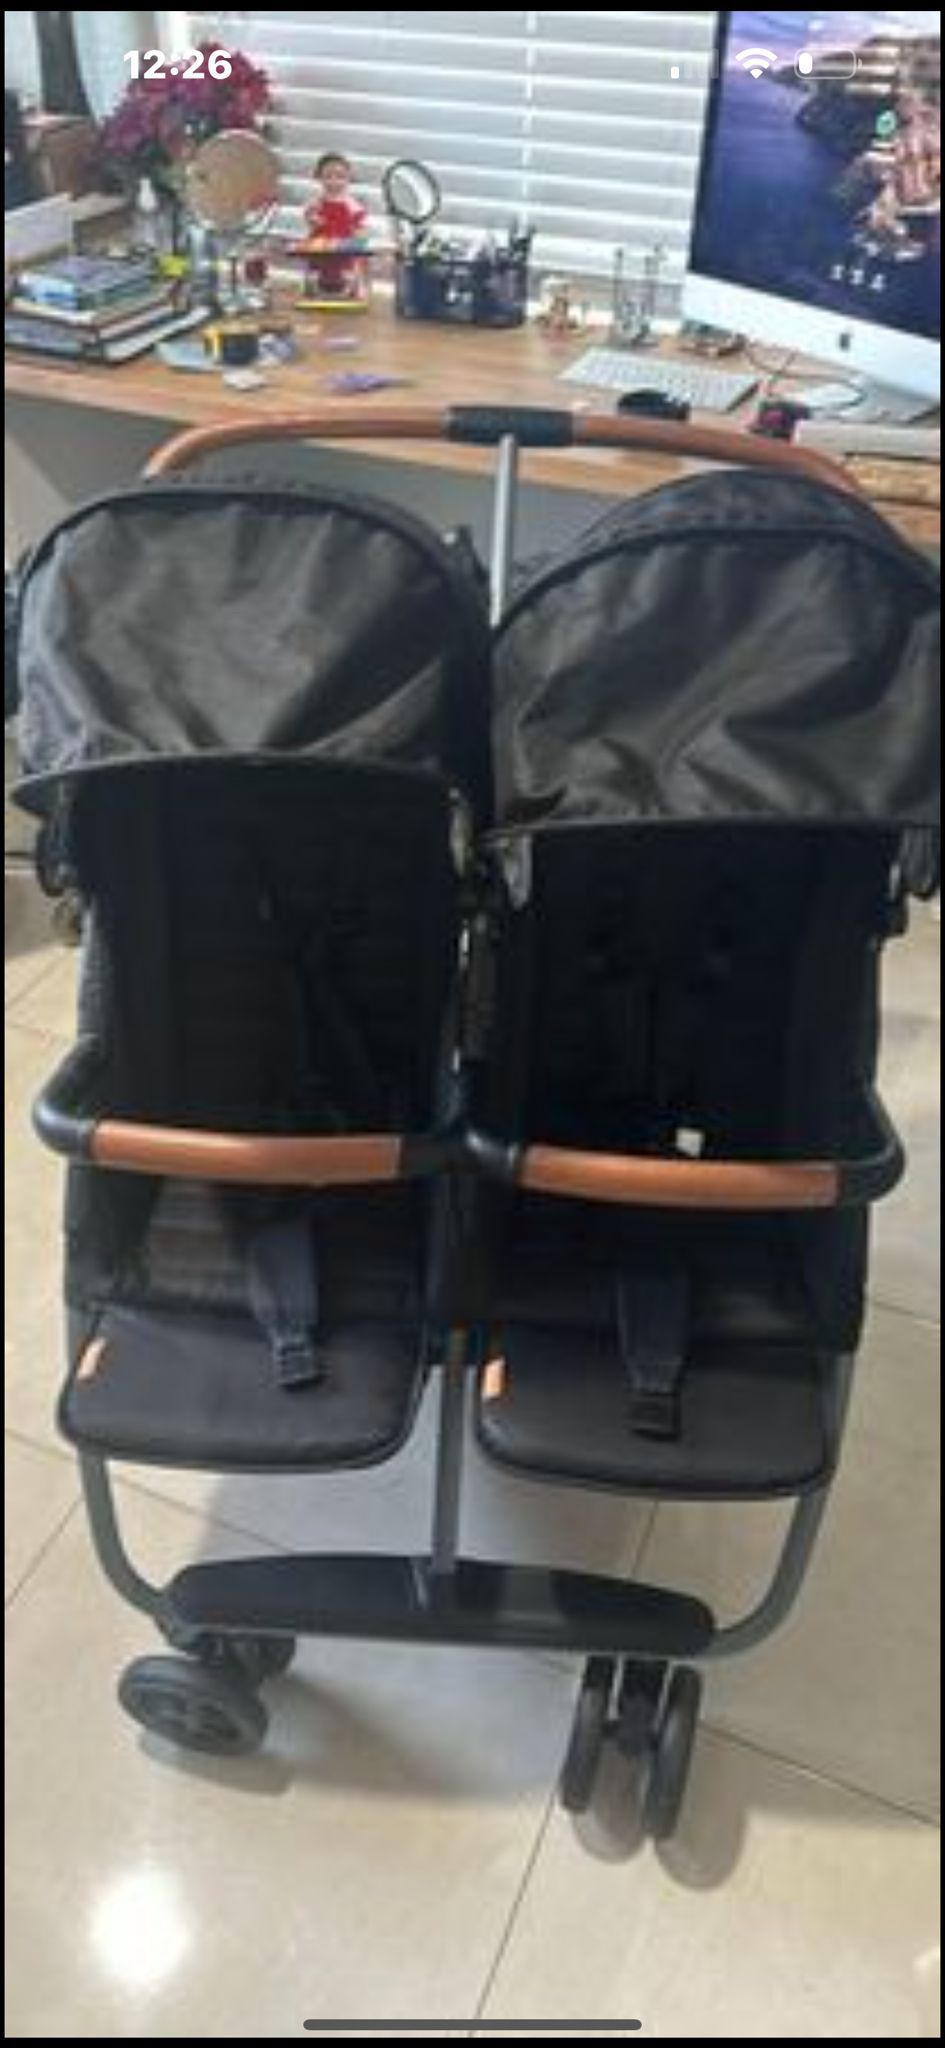 Zoe twins stroller V1 side by side black lightweight baby stroller twin